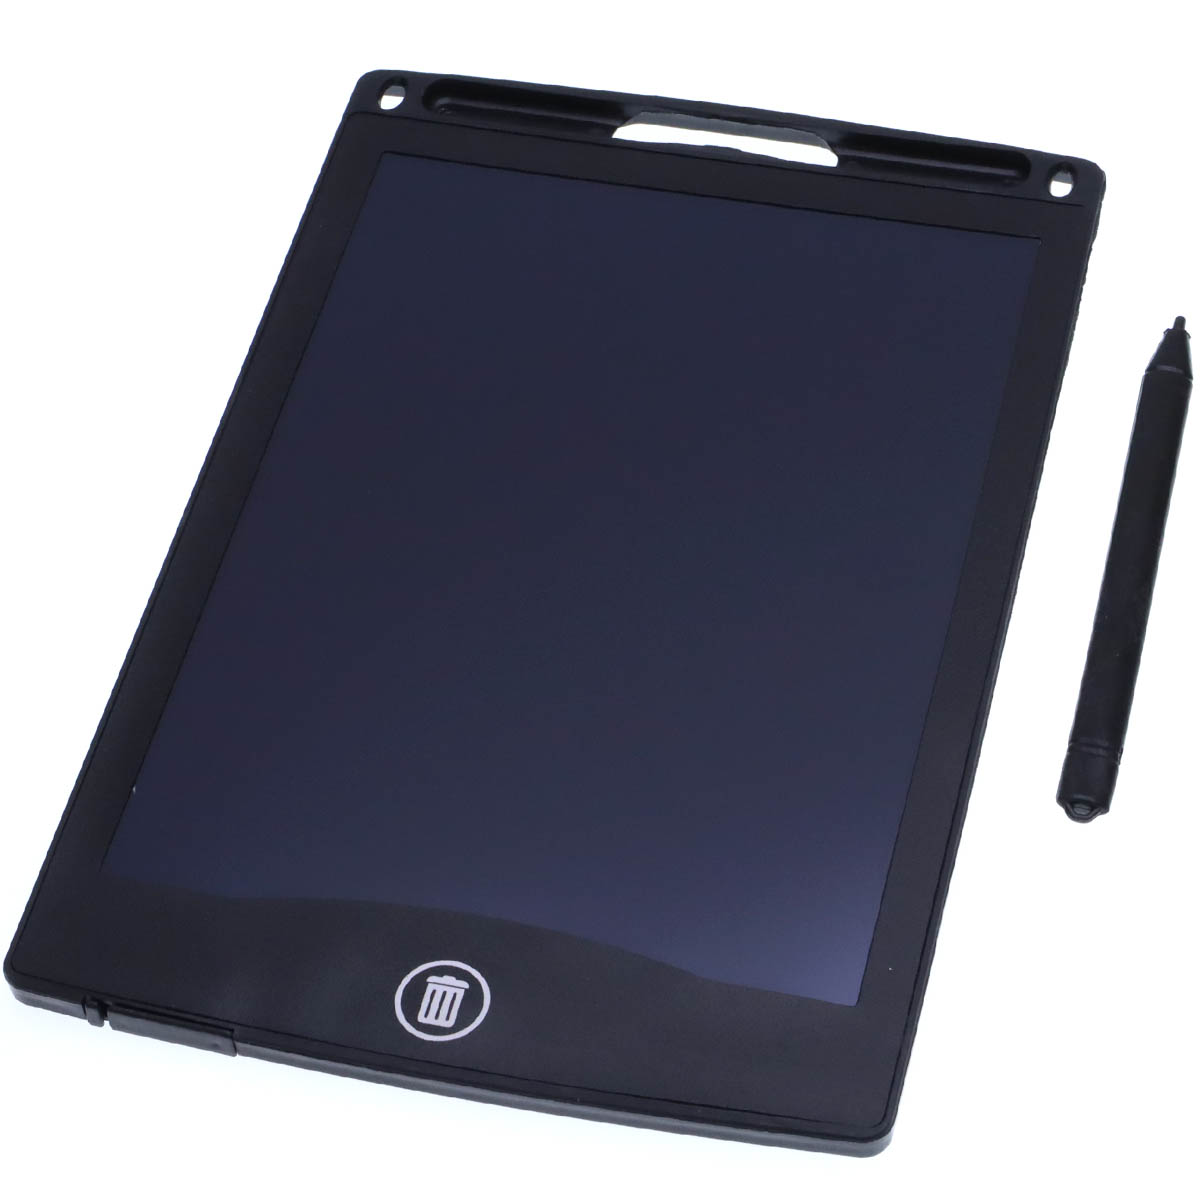 Графический планшет BAIBIAN с сенсорным дисплеем для рисования, 8.5 дюймов, цвет черный